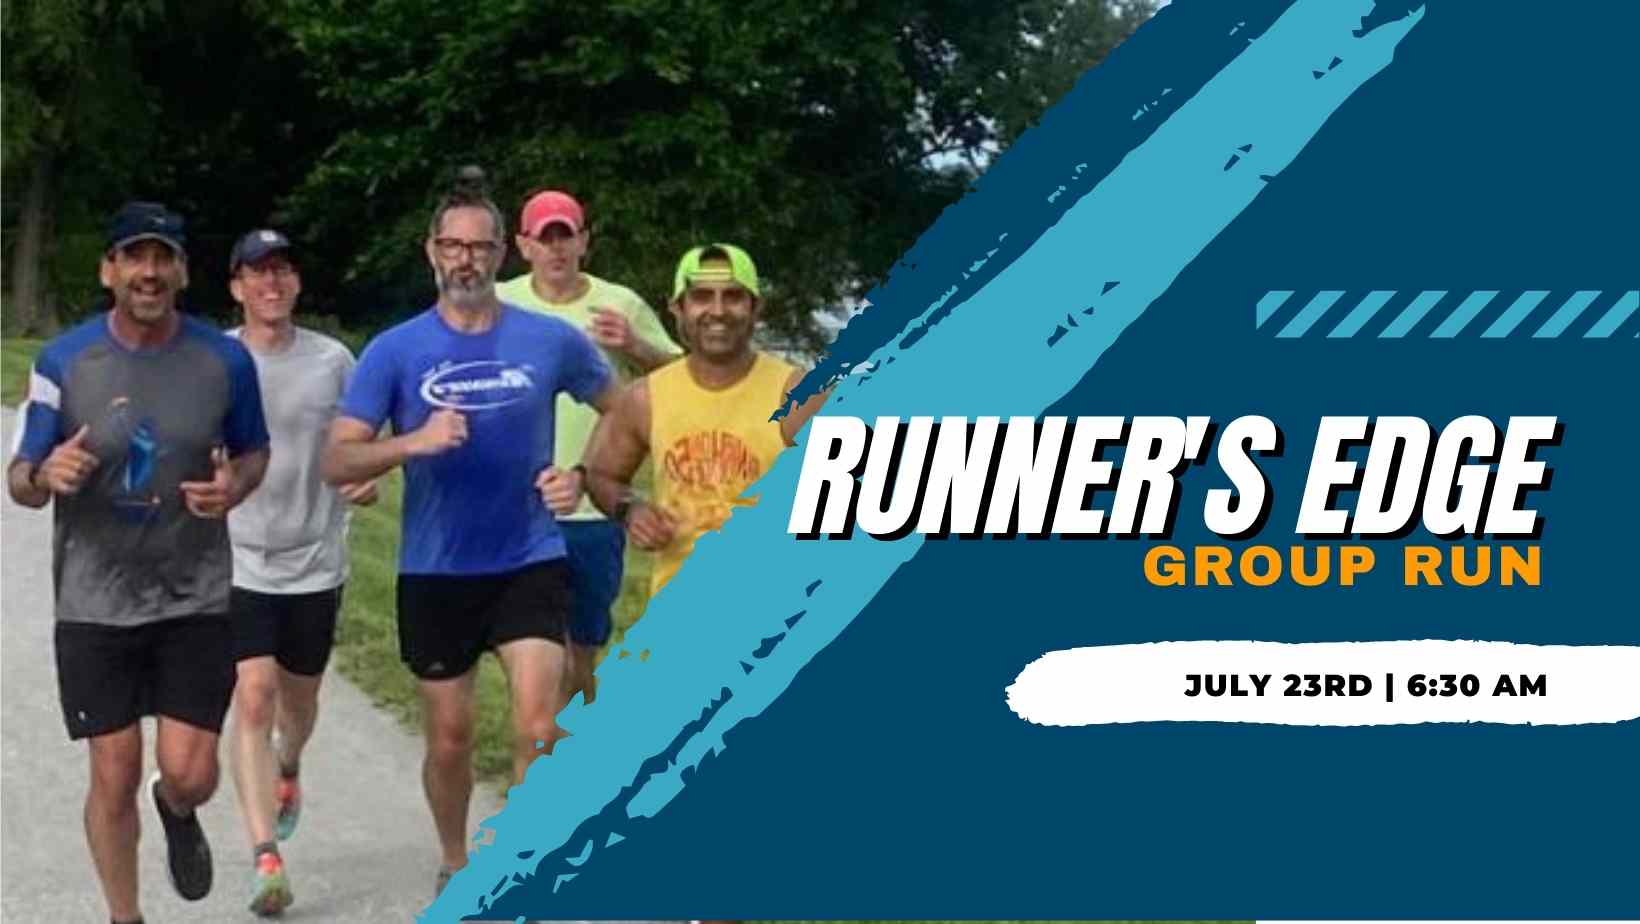 runner's edge Kansas City's Group Run